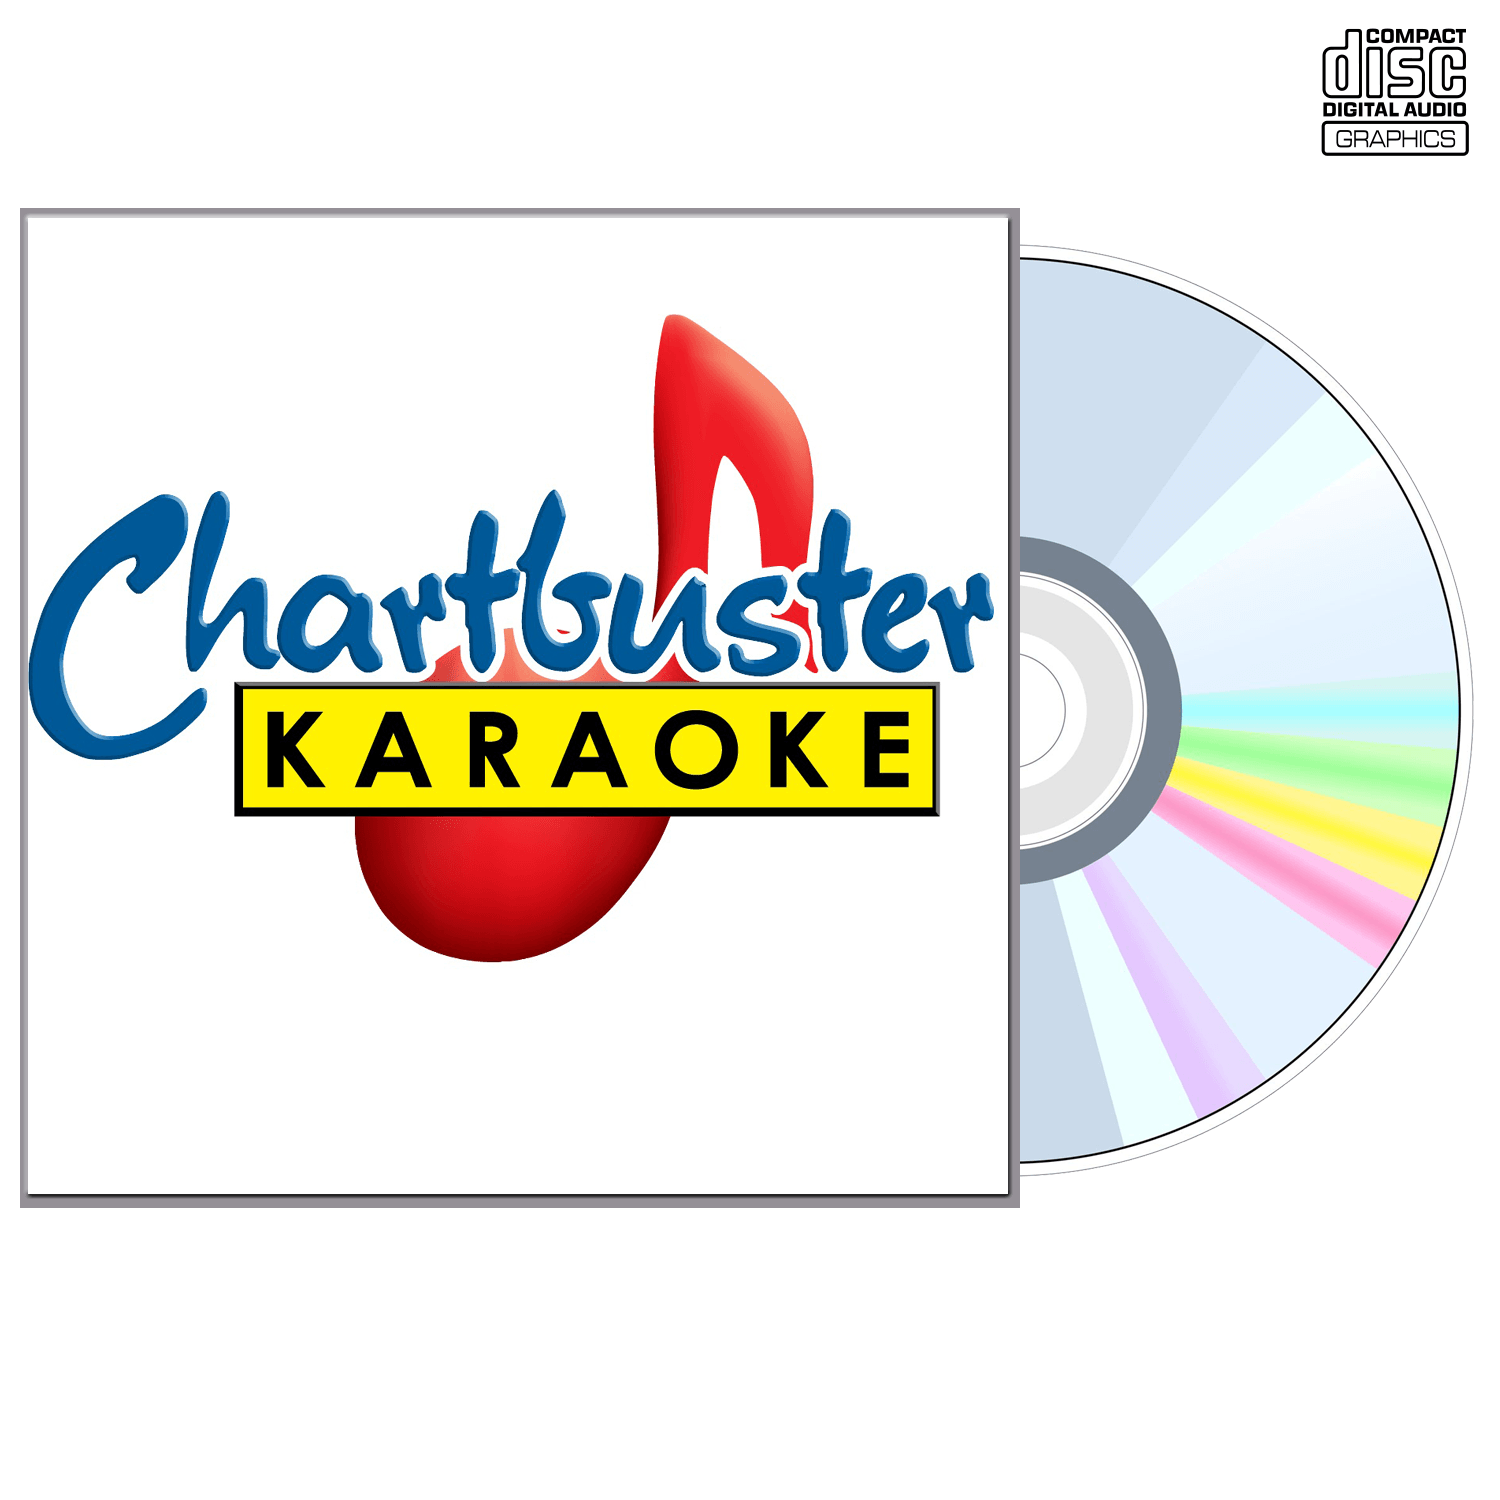 John Michael Montgomery 1 - CD+G - Chartbuster Karaoke - Karaoke Home Entertainment